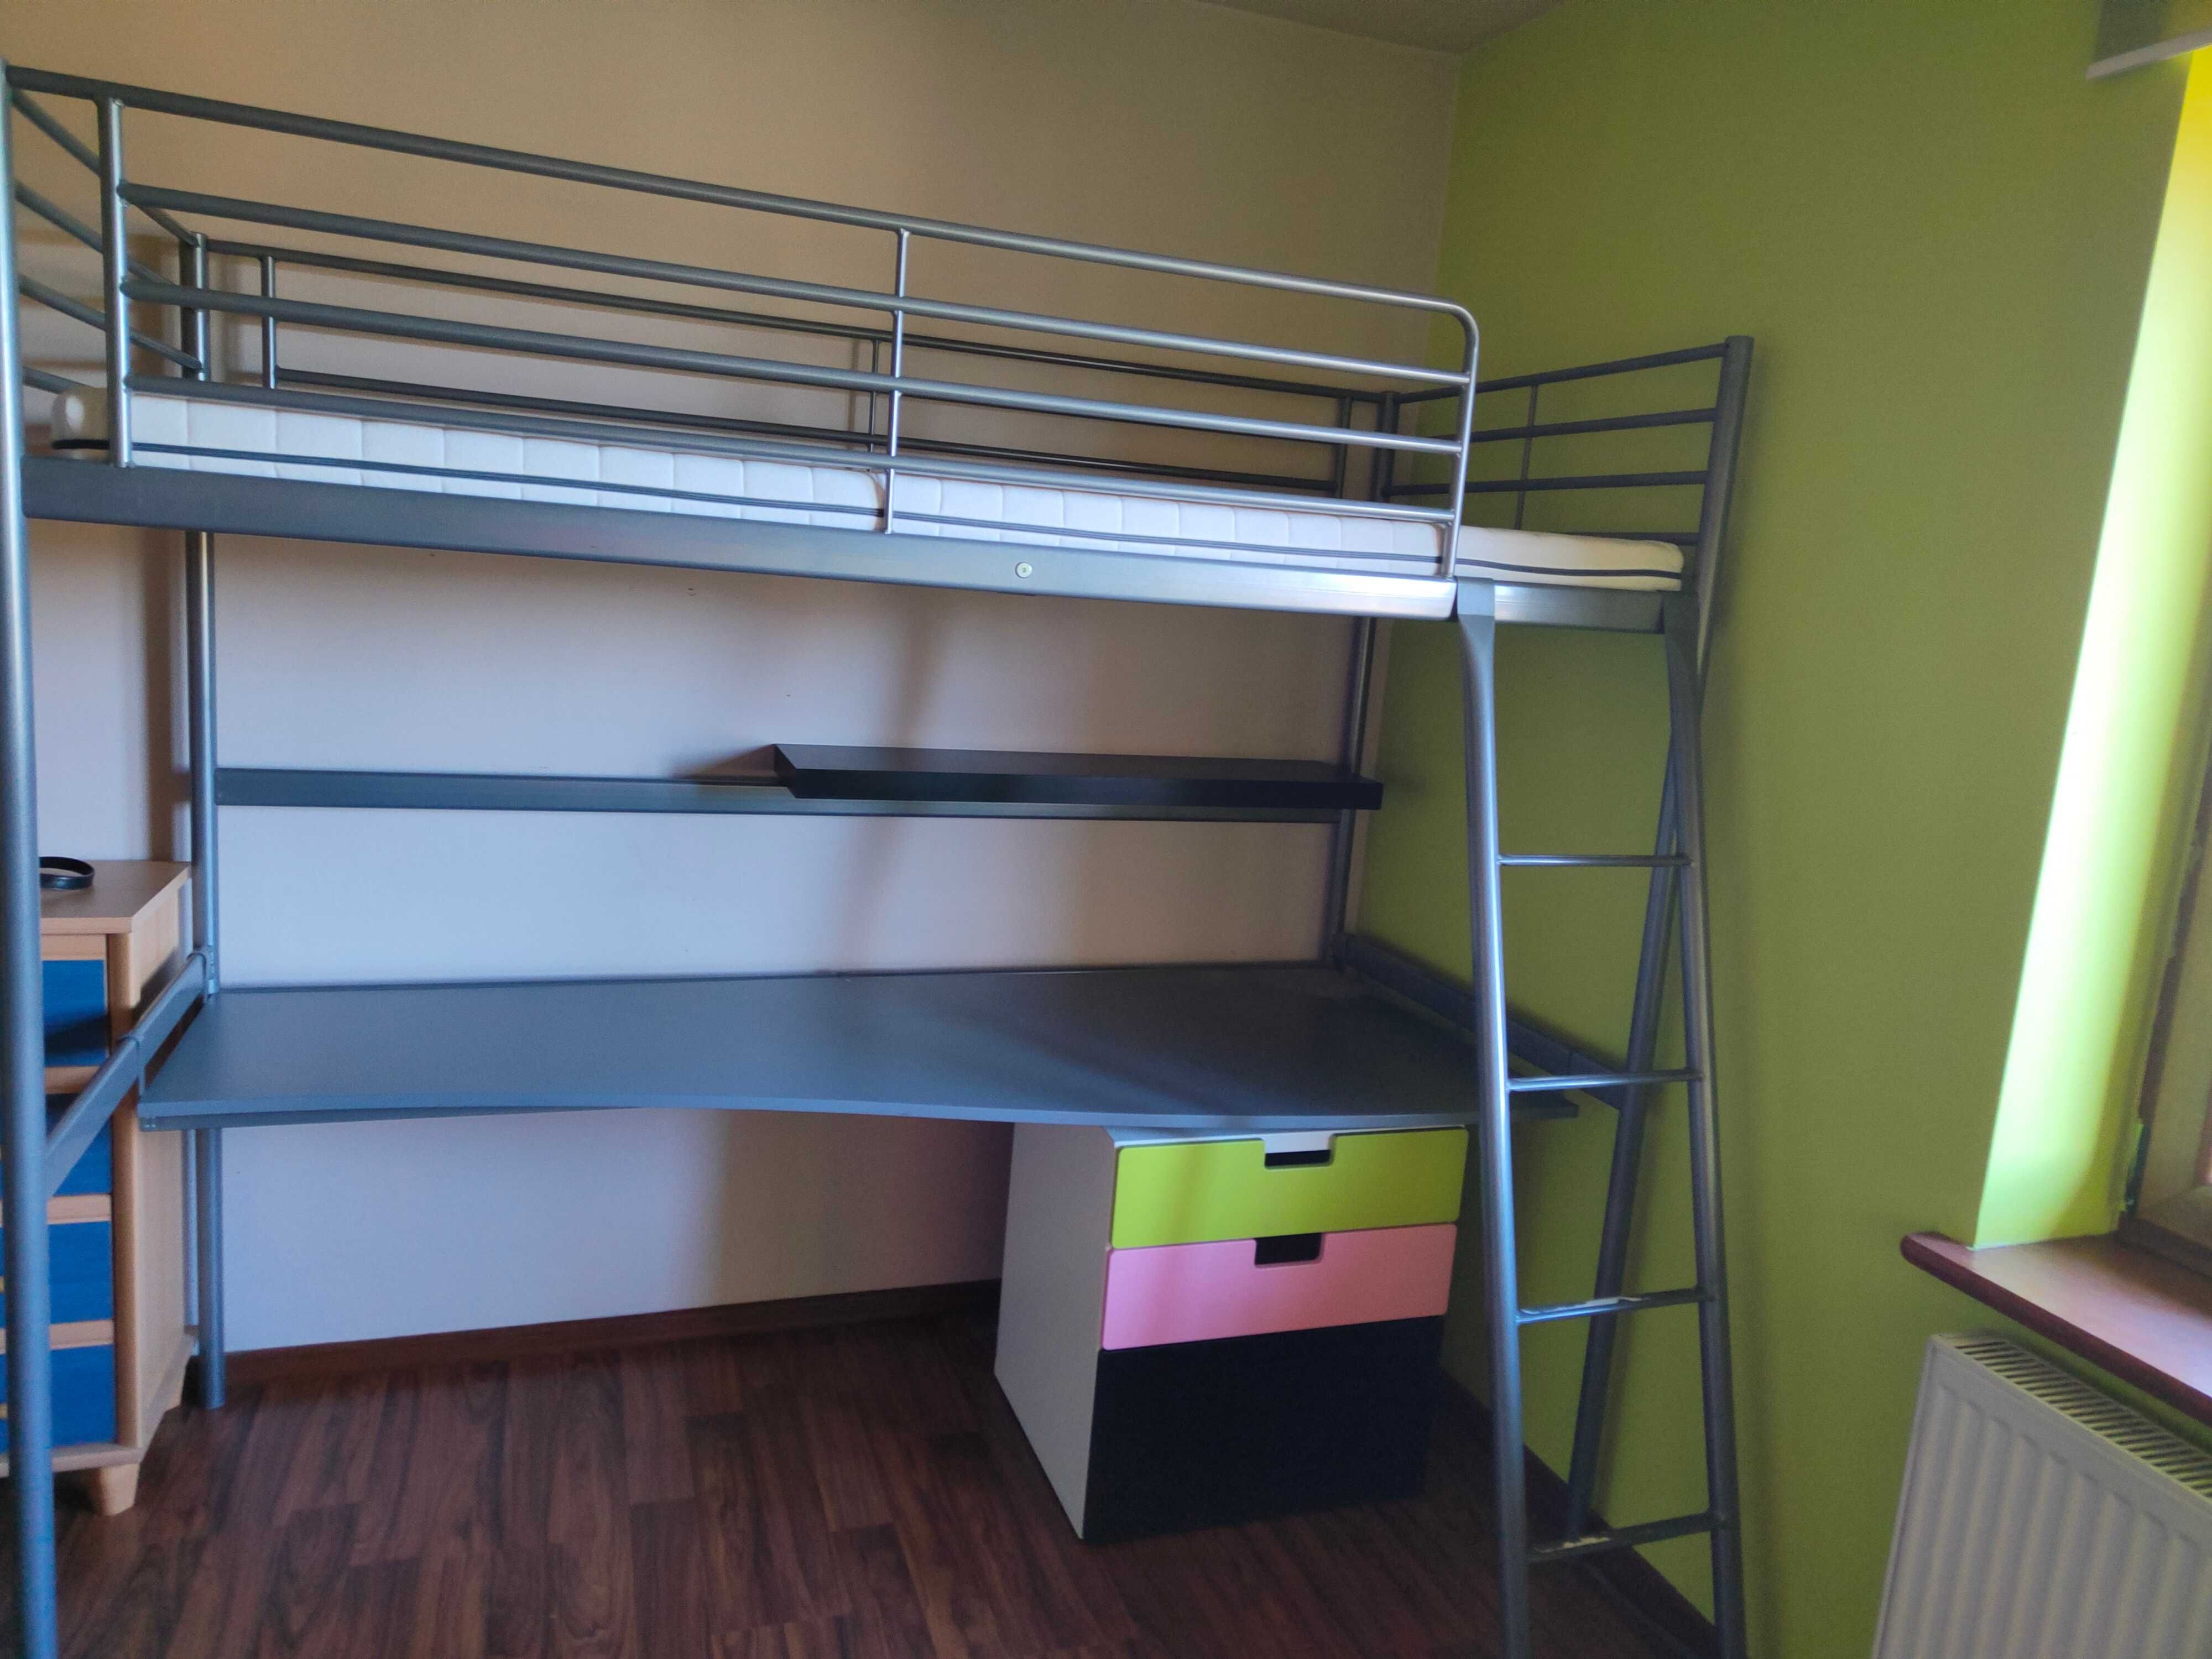 IKEA łóżko SVÄRTA plus materac, biurko i komoda, szarostalowy.